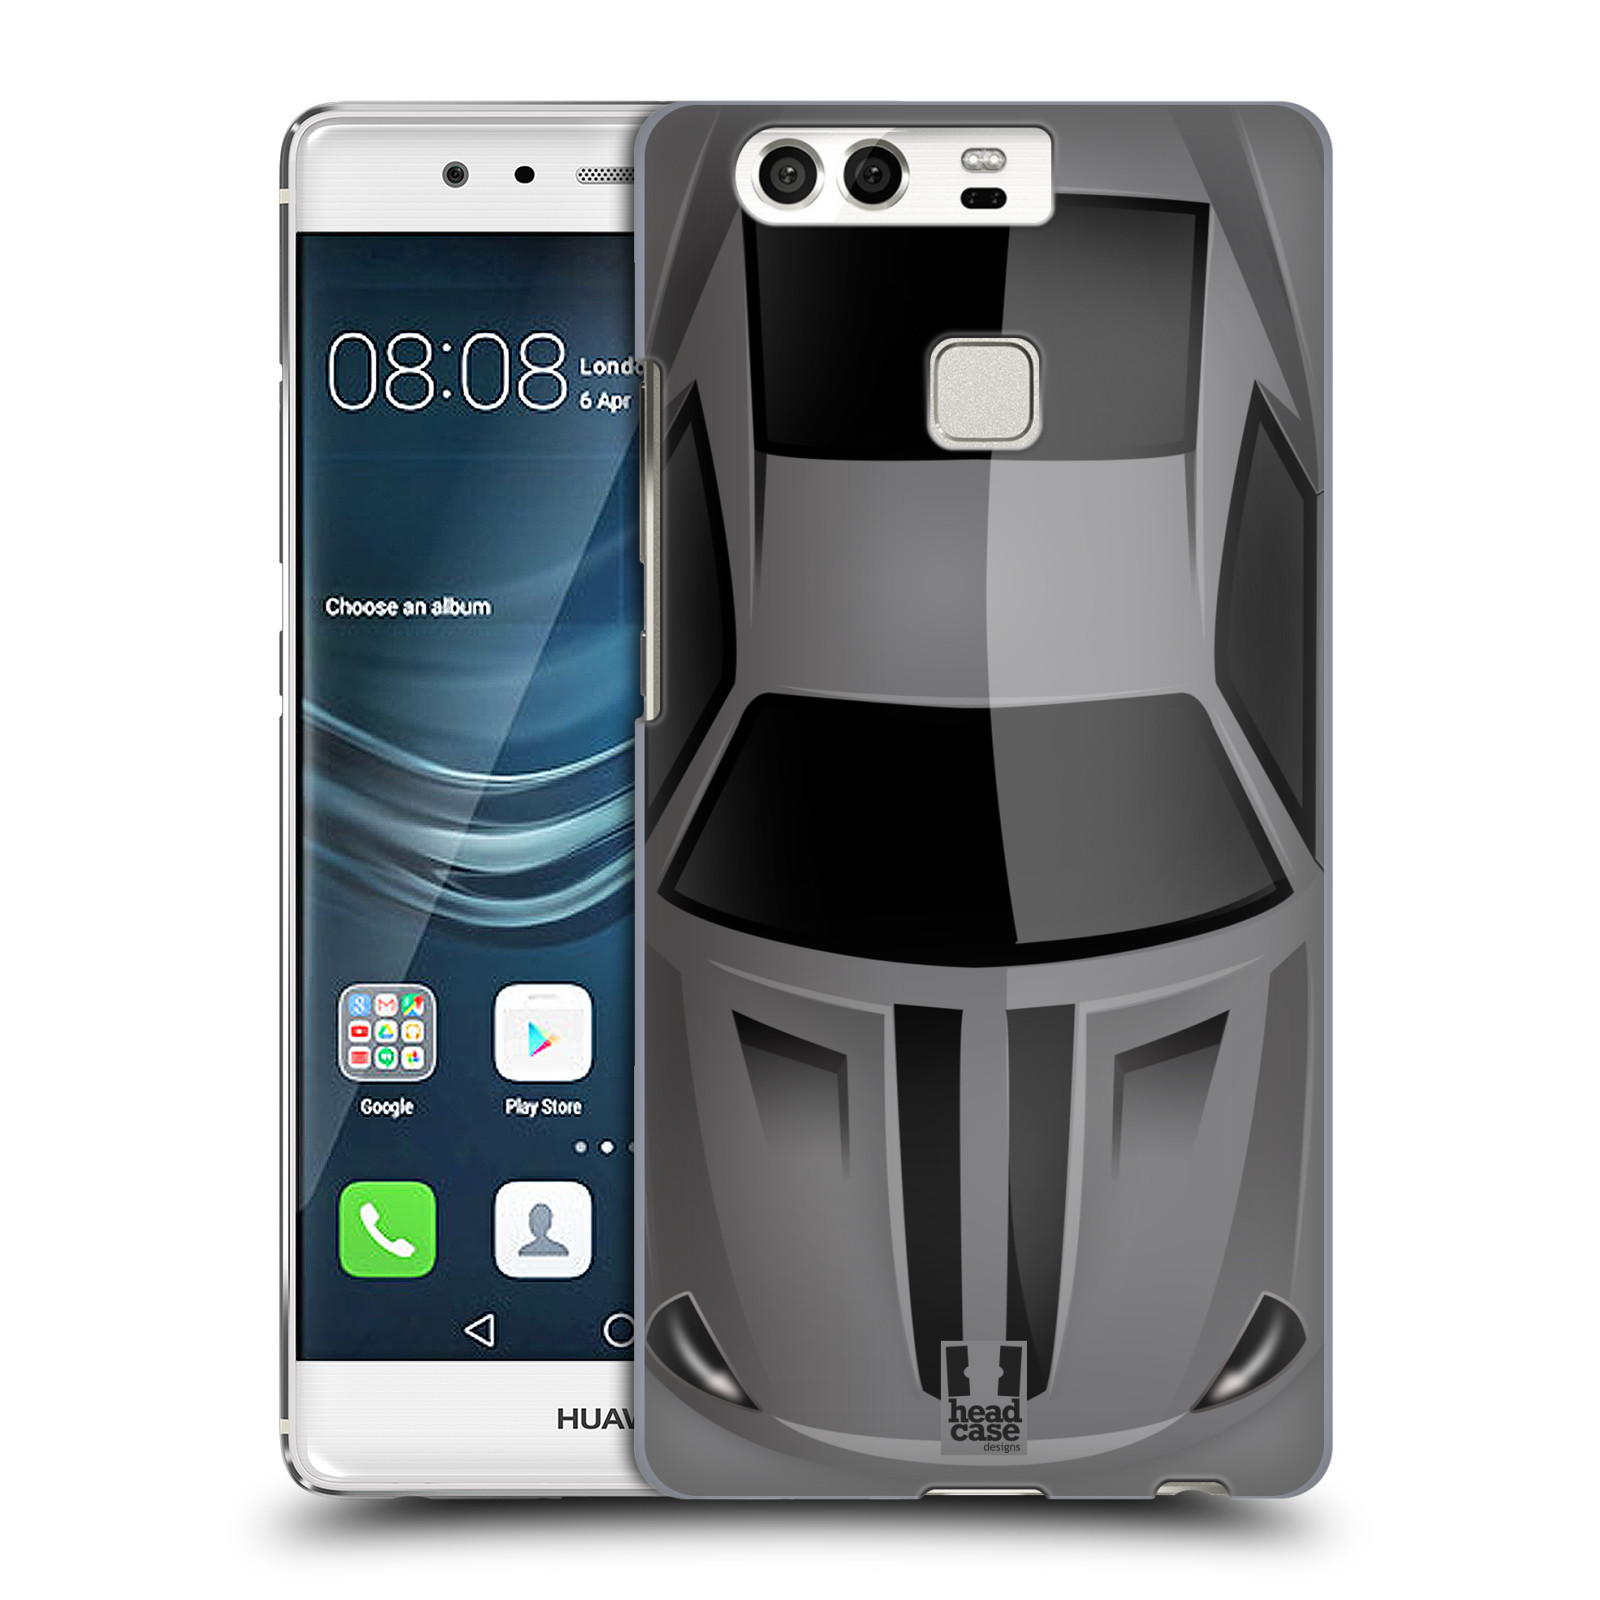 HEAD CASE plastový obal na mobil Huawei P9 / P9 DUAL SIM vzor Auto horní pohled šedá